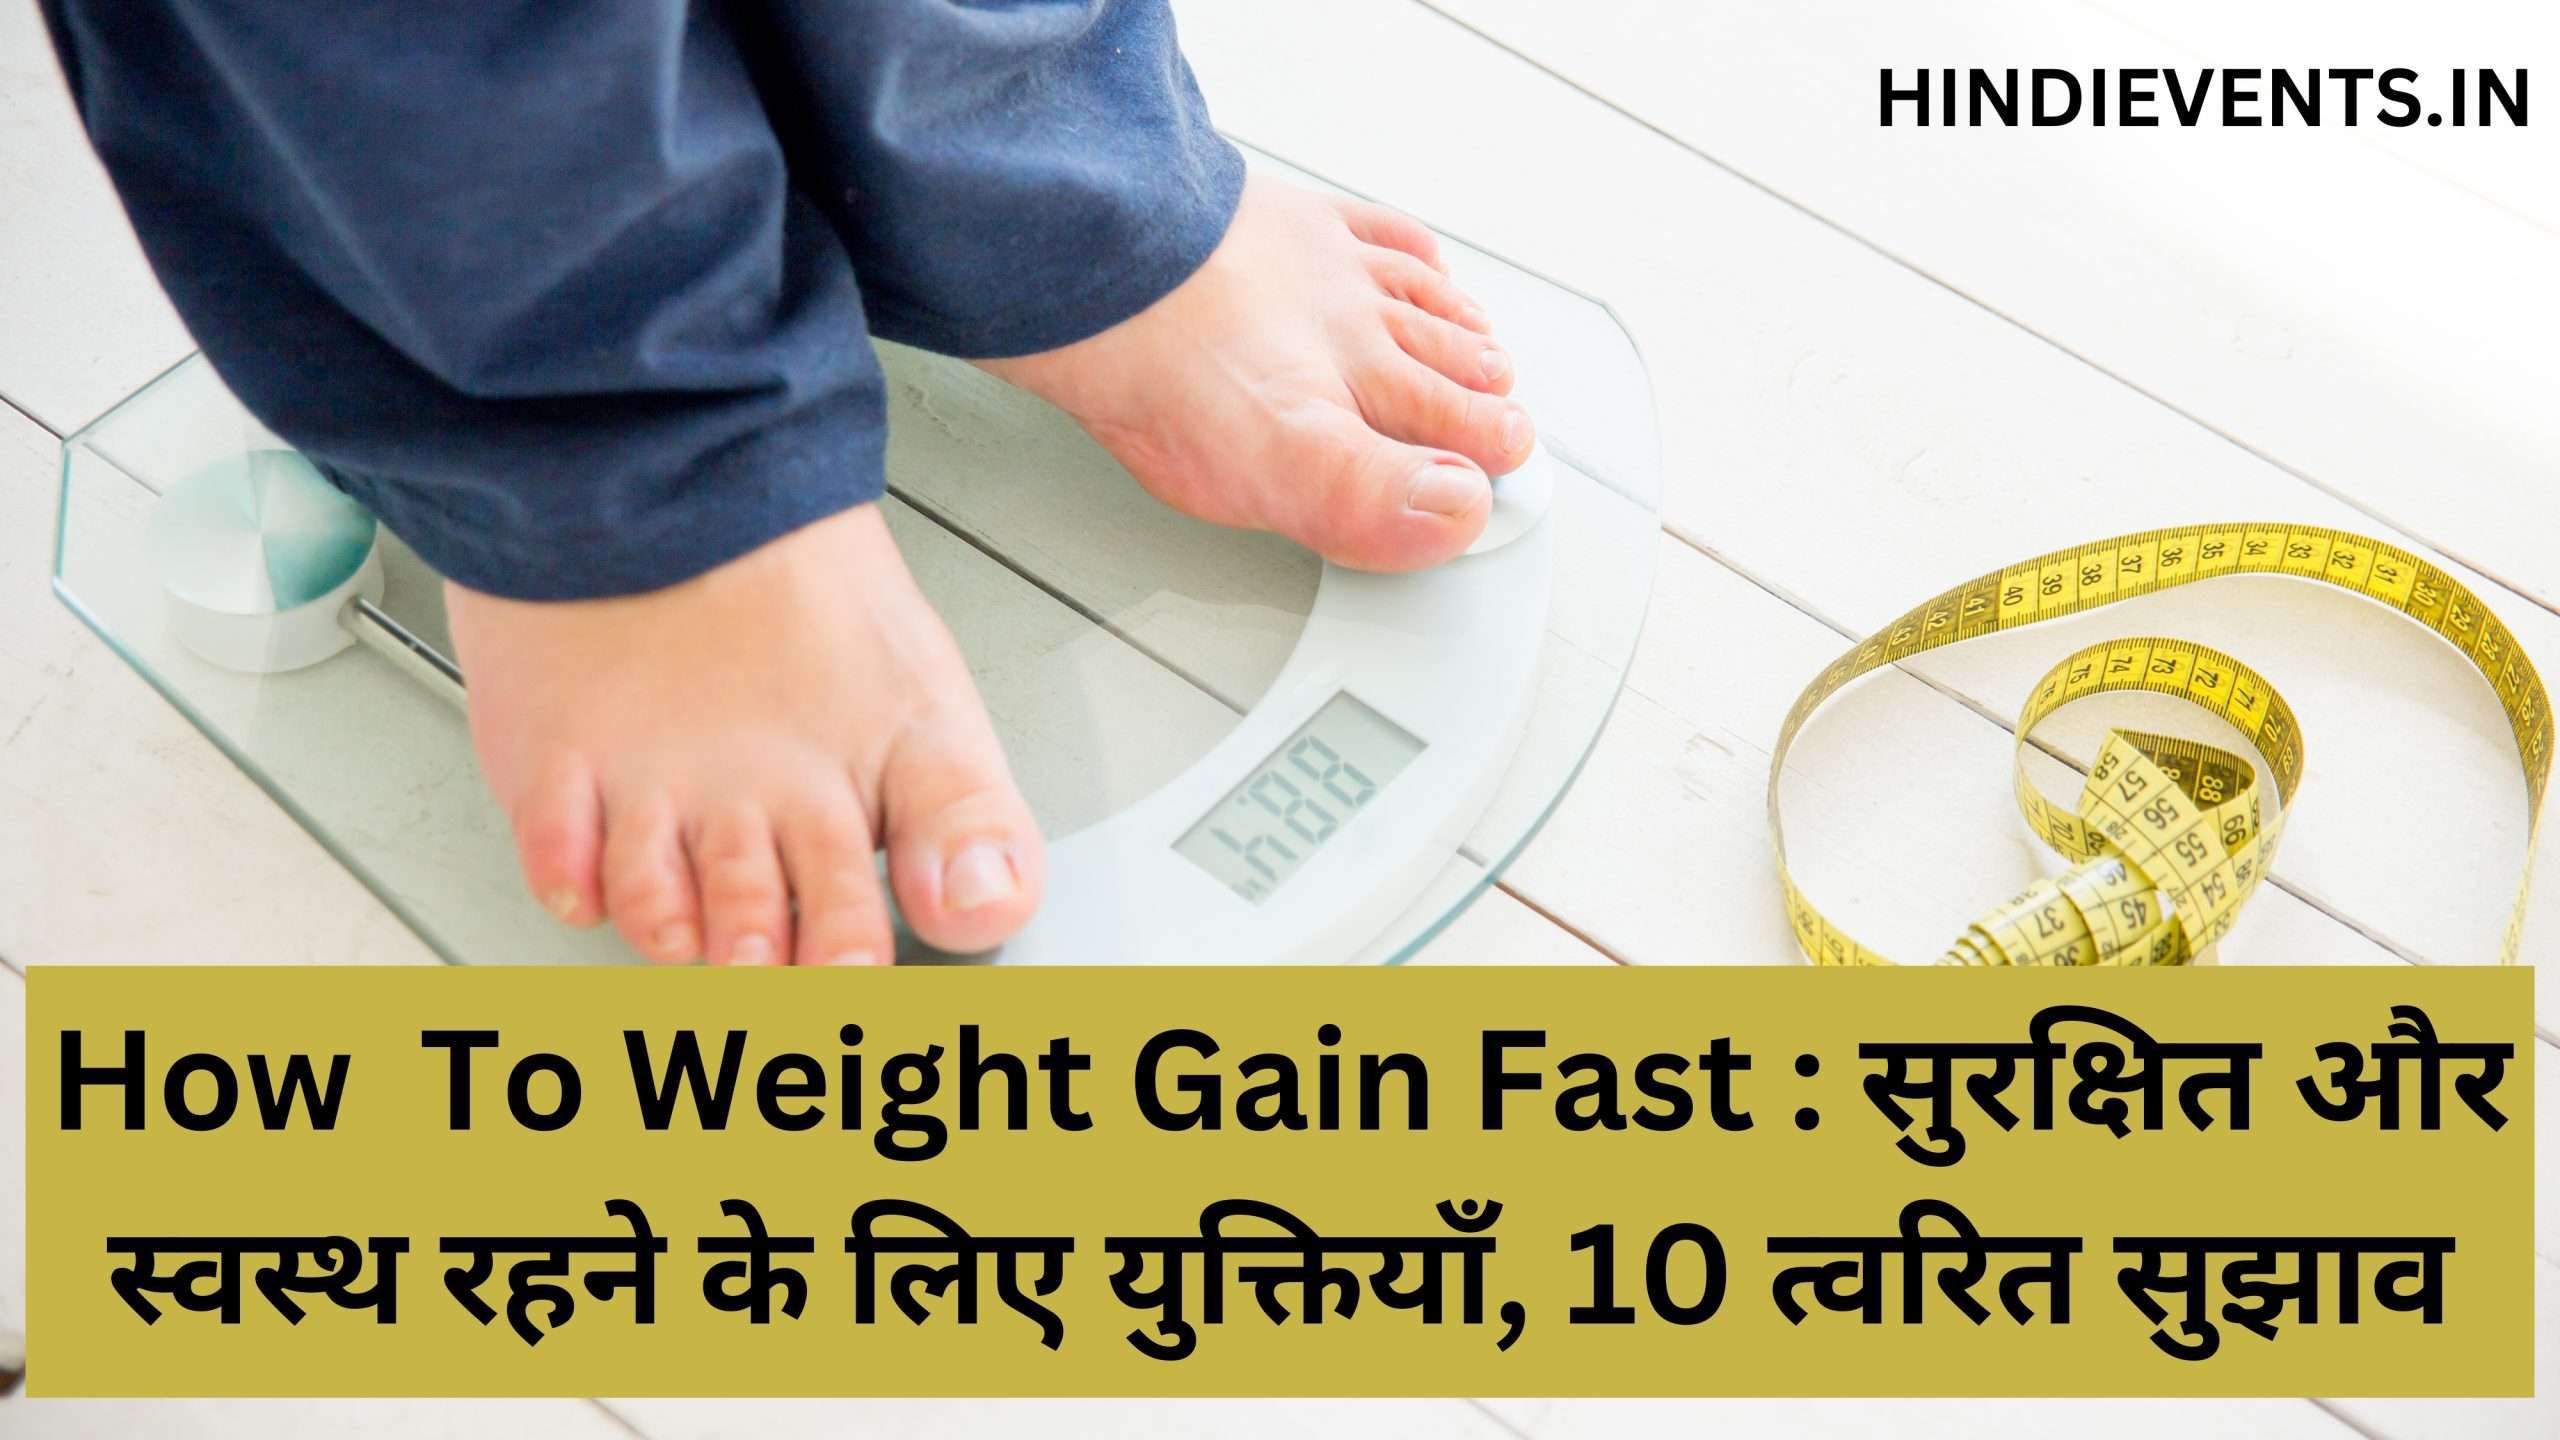 How  To Weight Gain Fast : सुरक्षित और स्वस्थ रहने के लिए युक्तियाँ, 10 त्वरित सुझाव